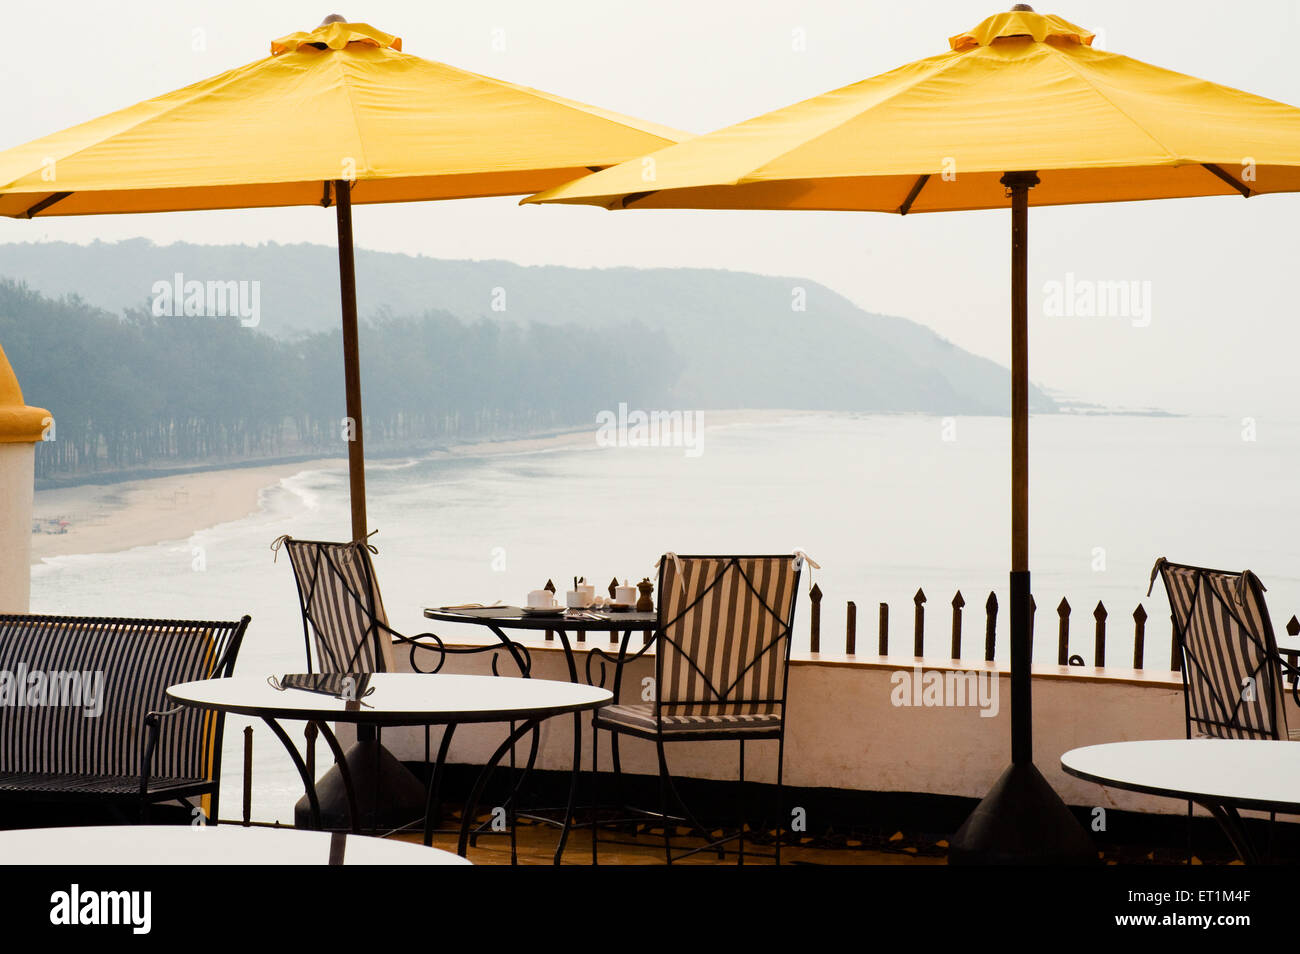 Paraguas amarillo y mar a fuertes terakhol Goa hotel ; ; India Foto de stock